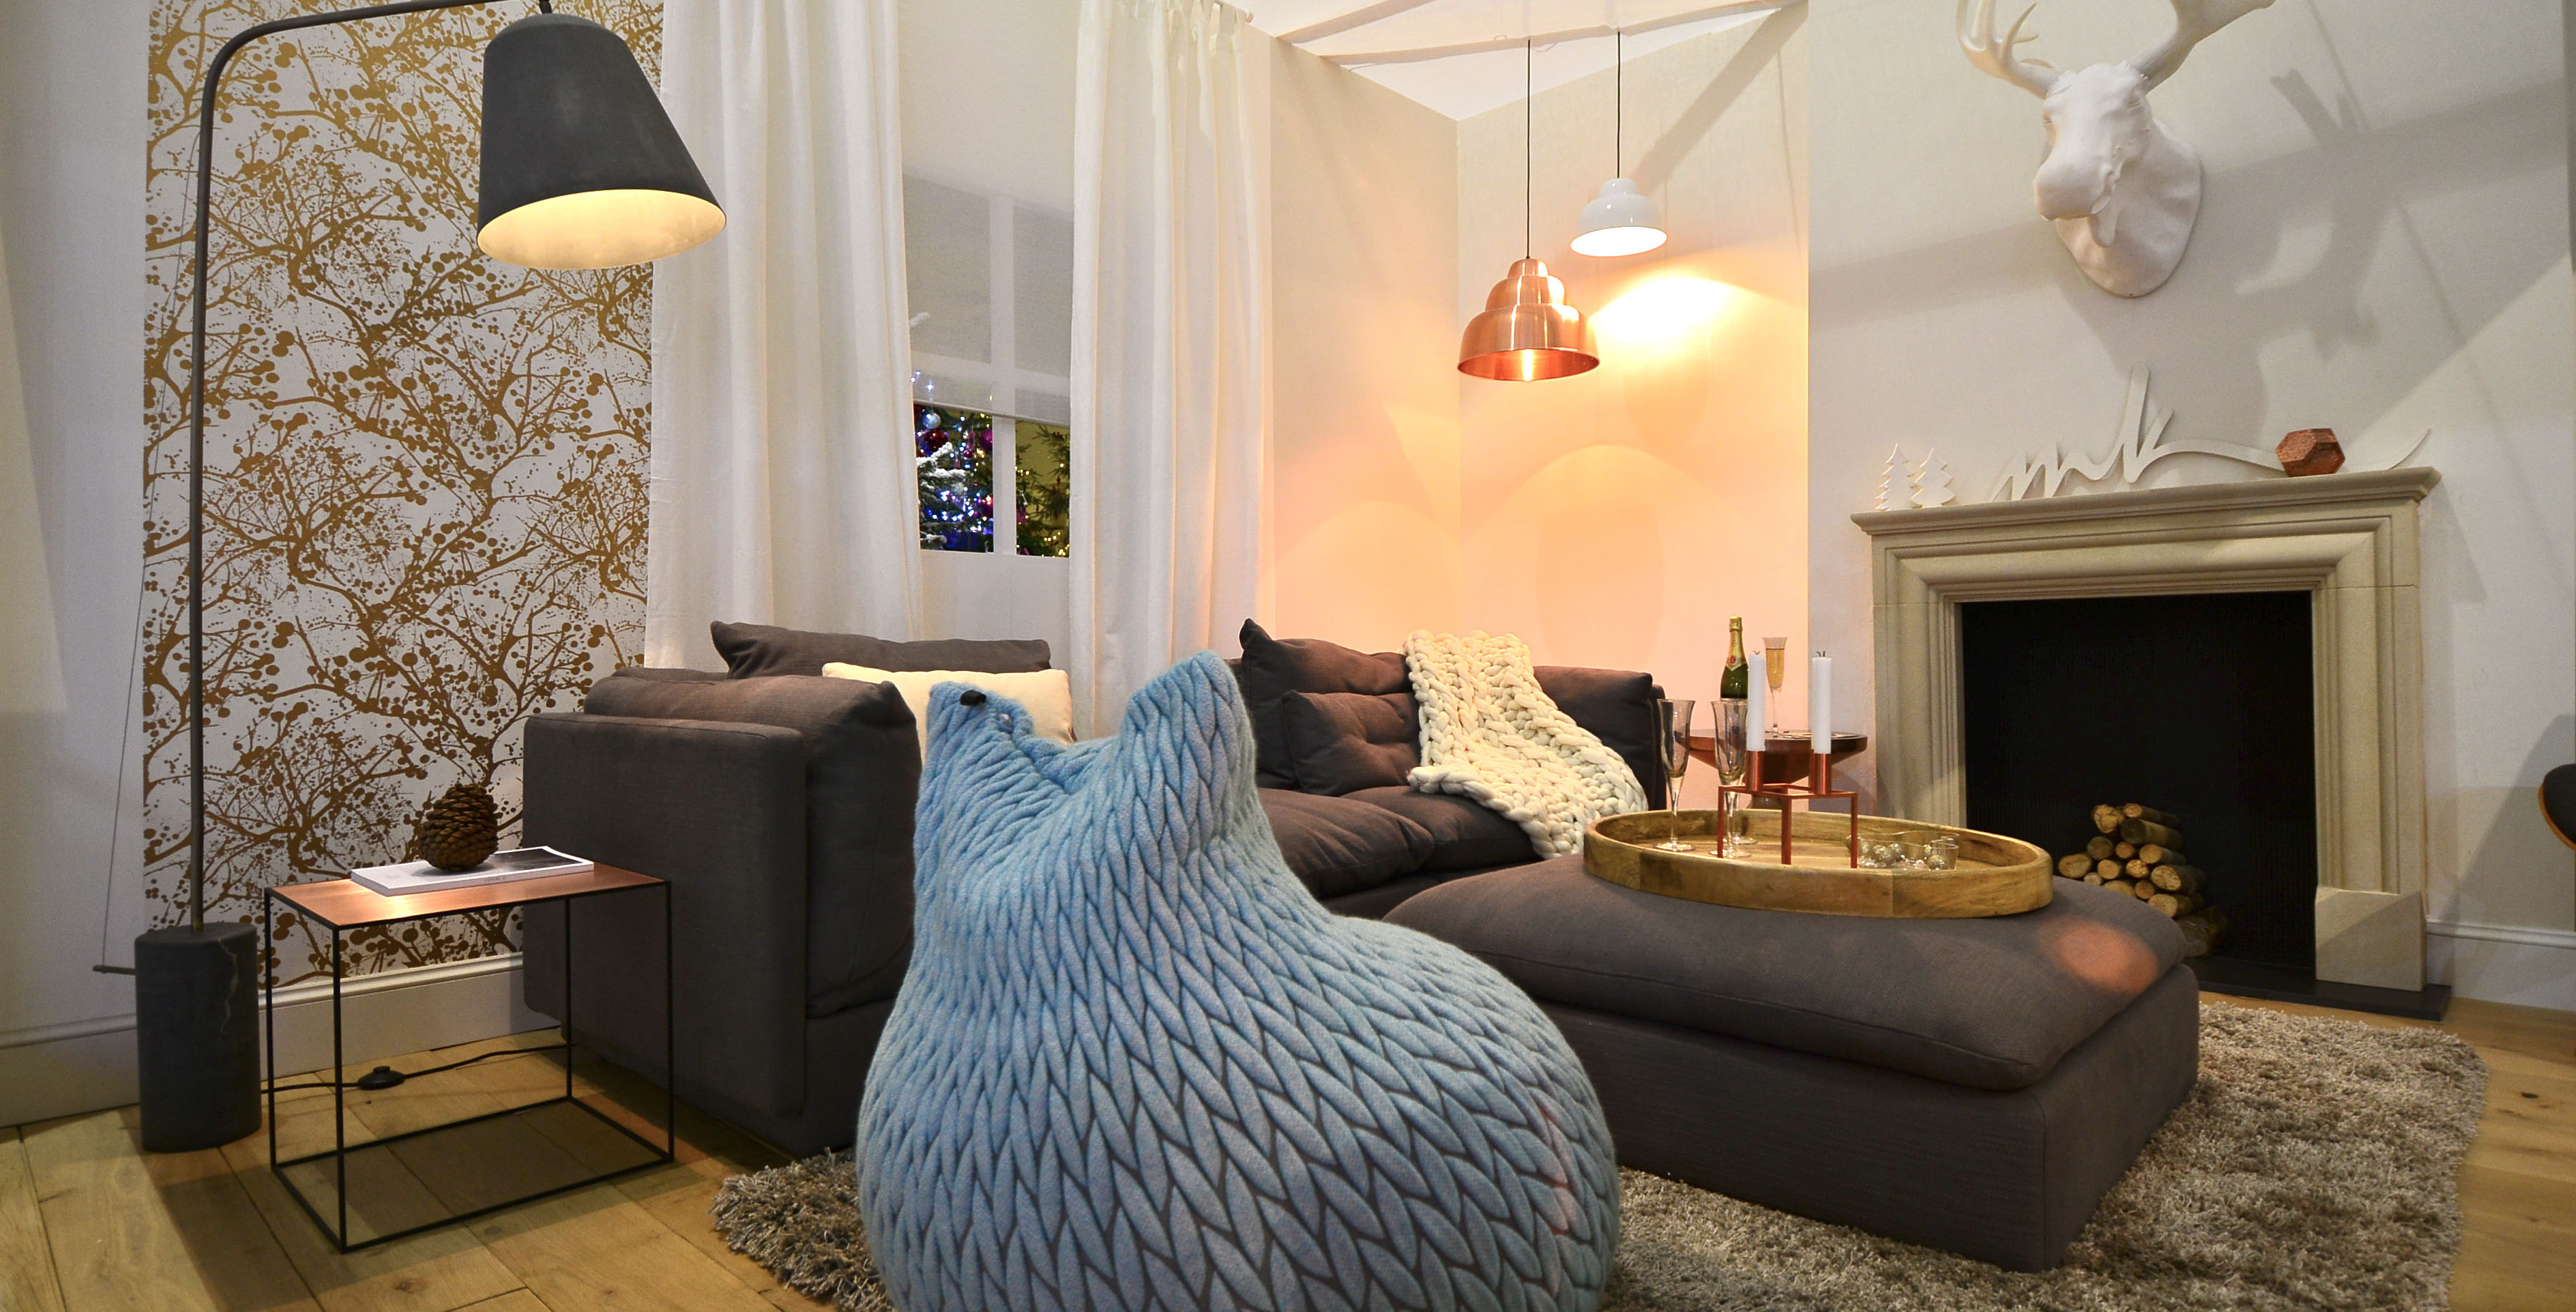 Inspirational Living Room Decor Ideas With Wallpaper - Modern Pillows , HD Wallpaper & Backgrounds